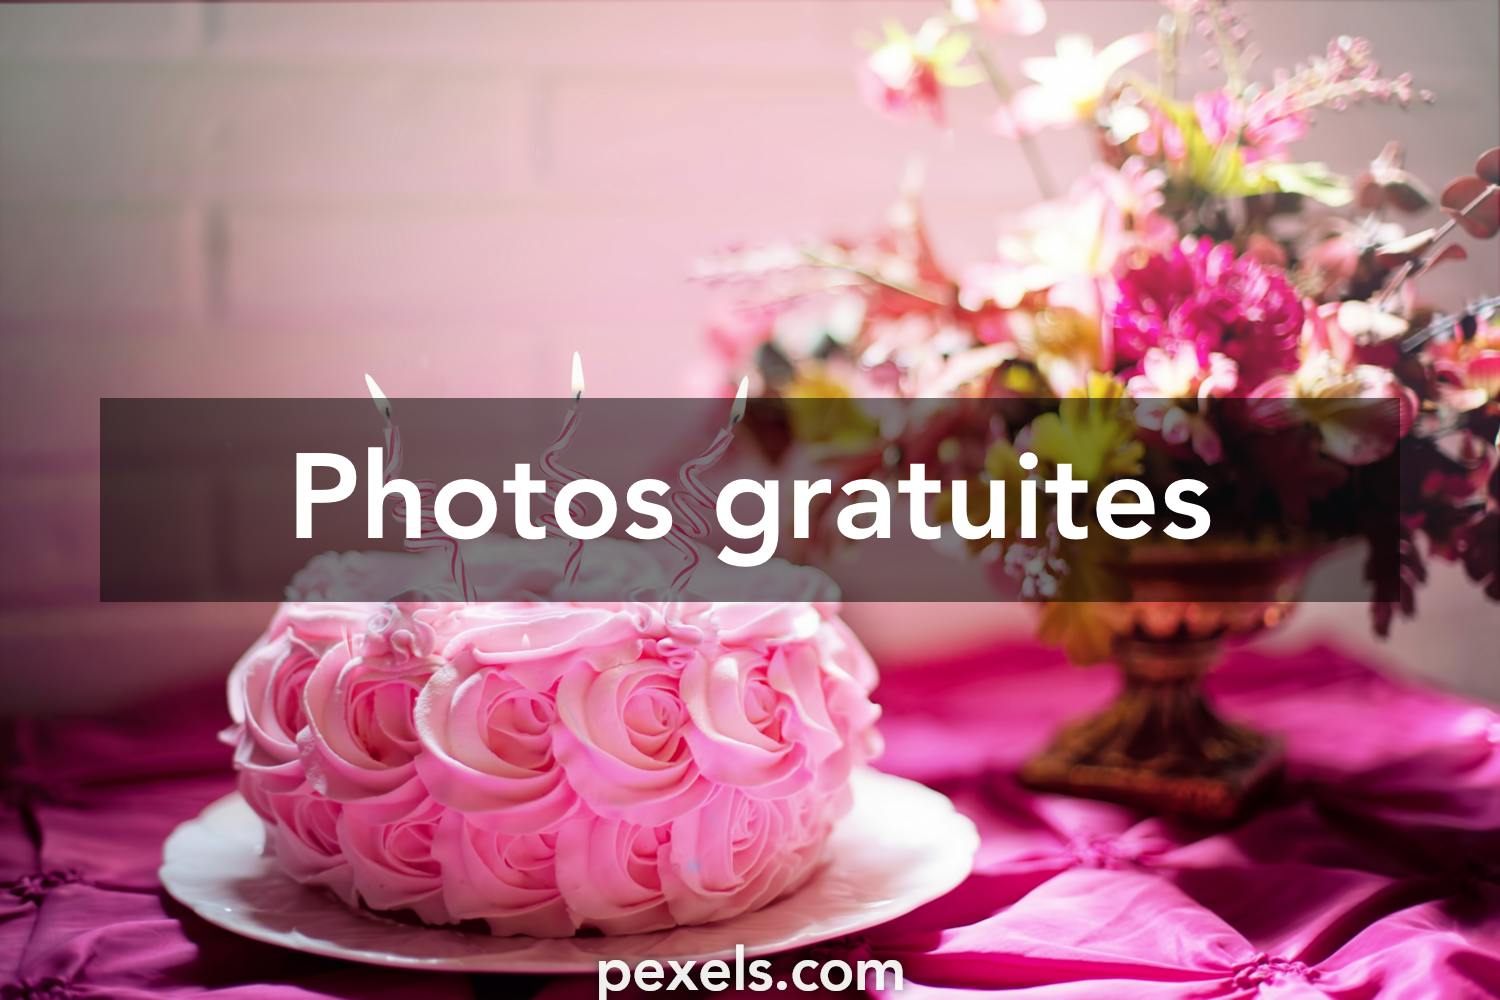 Les 60 000 Meilleures Photos De Joyeux Anniversaire Telechargement Gratuit Photos Pexels